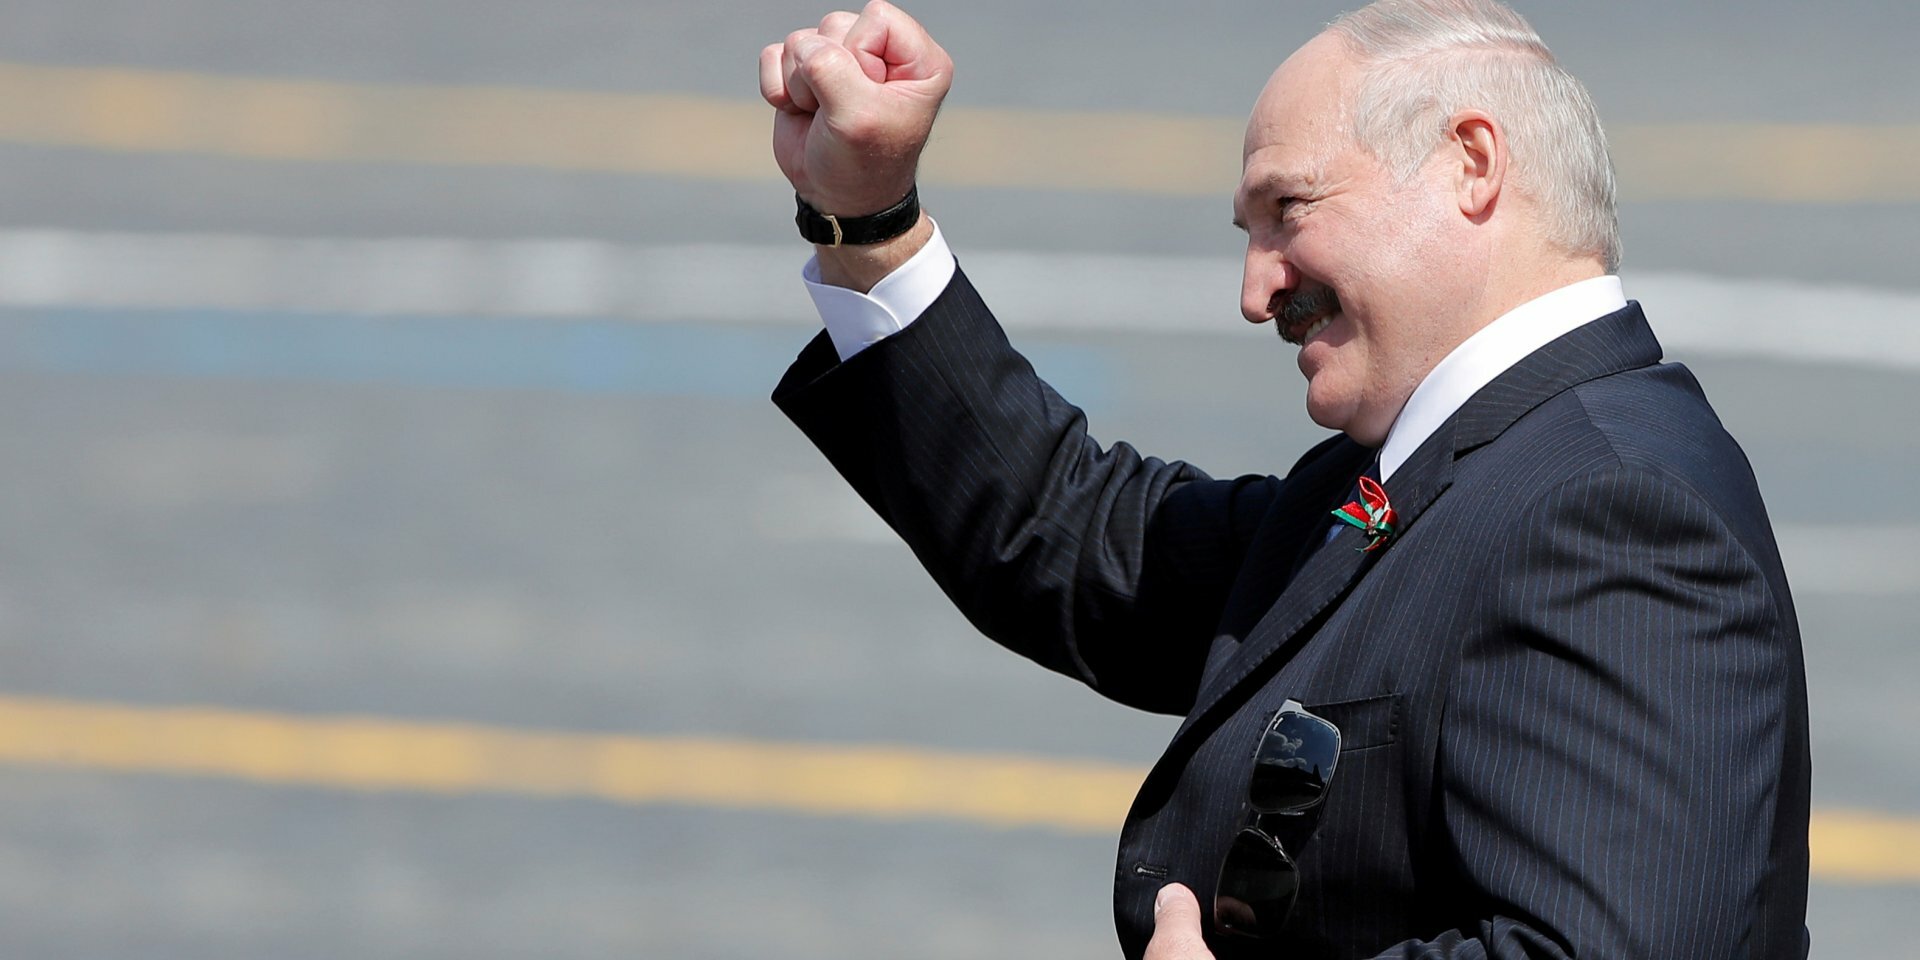 Лукашенко хотел объединить Белоруссию и Украину, чтобы остановить Россию, - Туск 